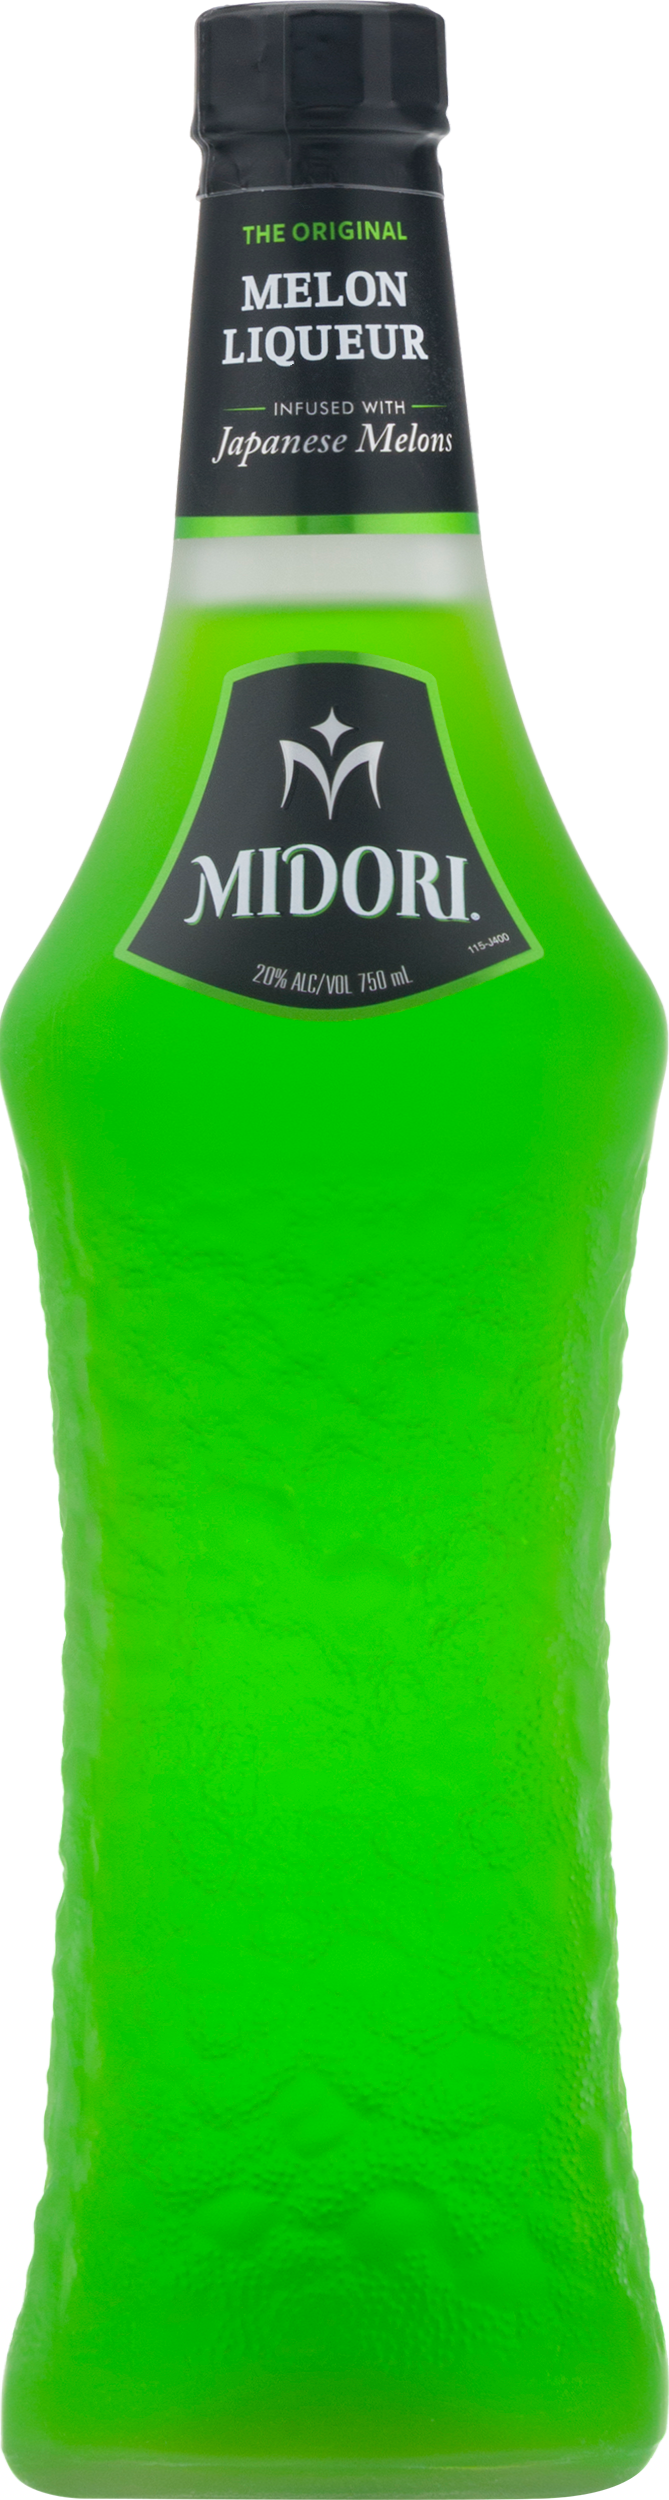 Midori Melon Liqueur Lit - Bottles and Cases